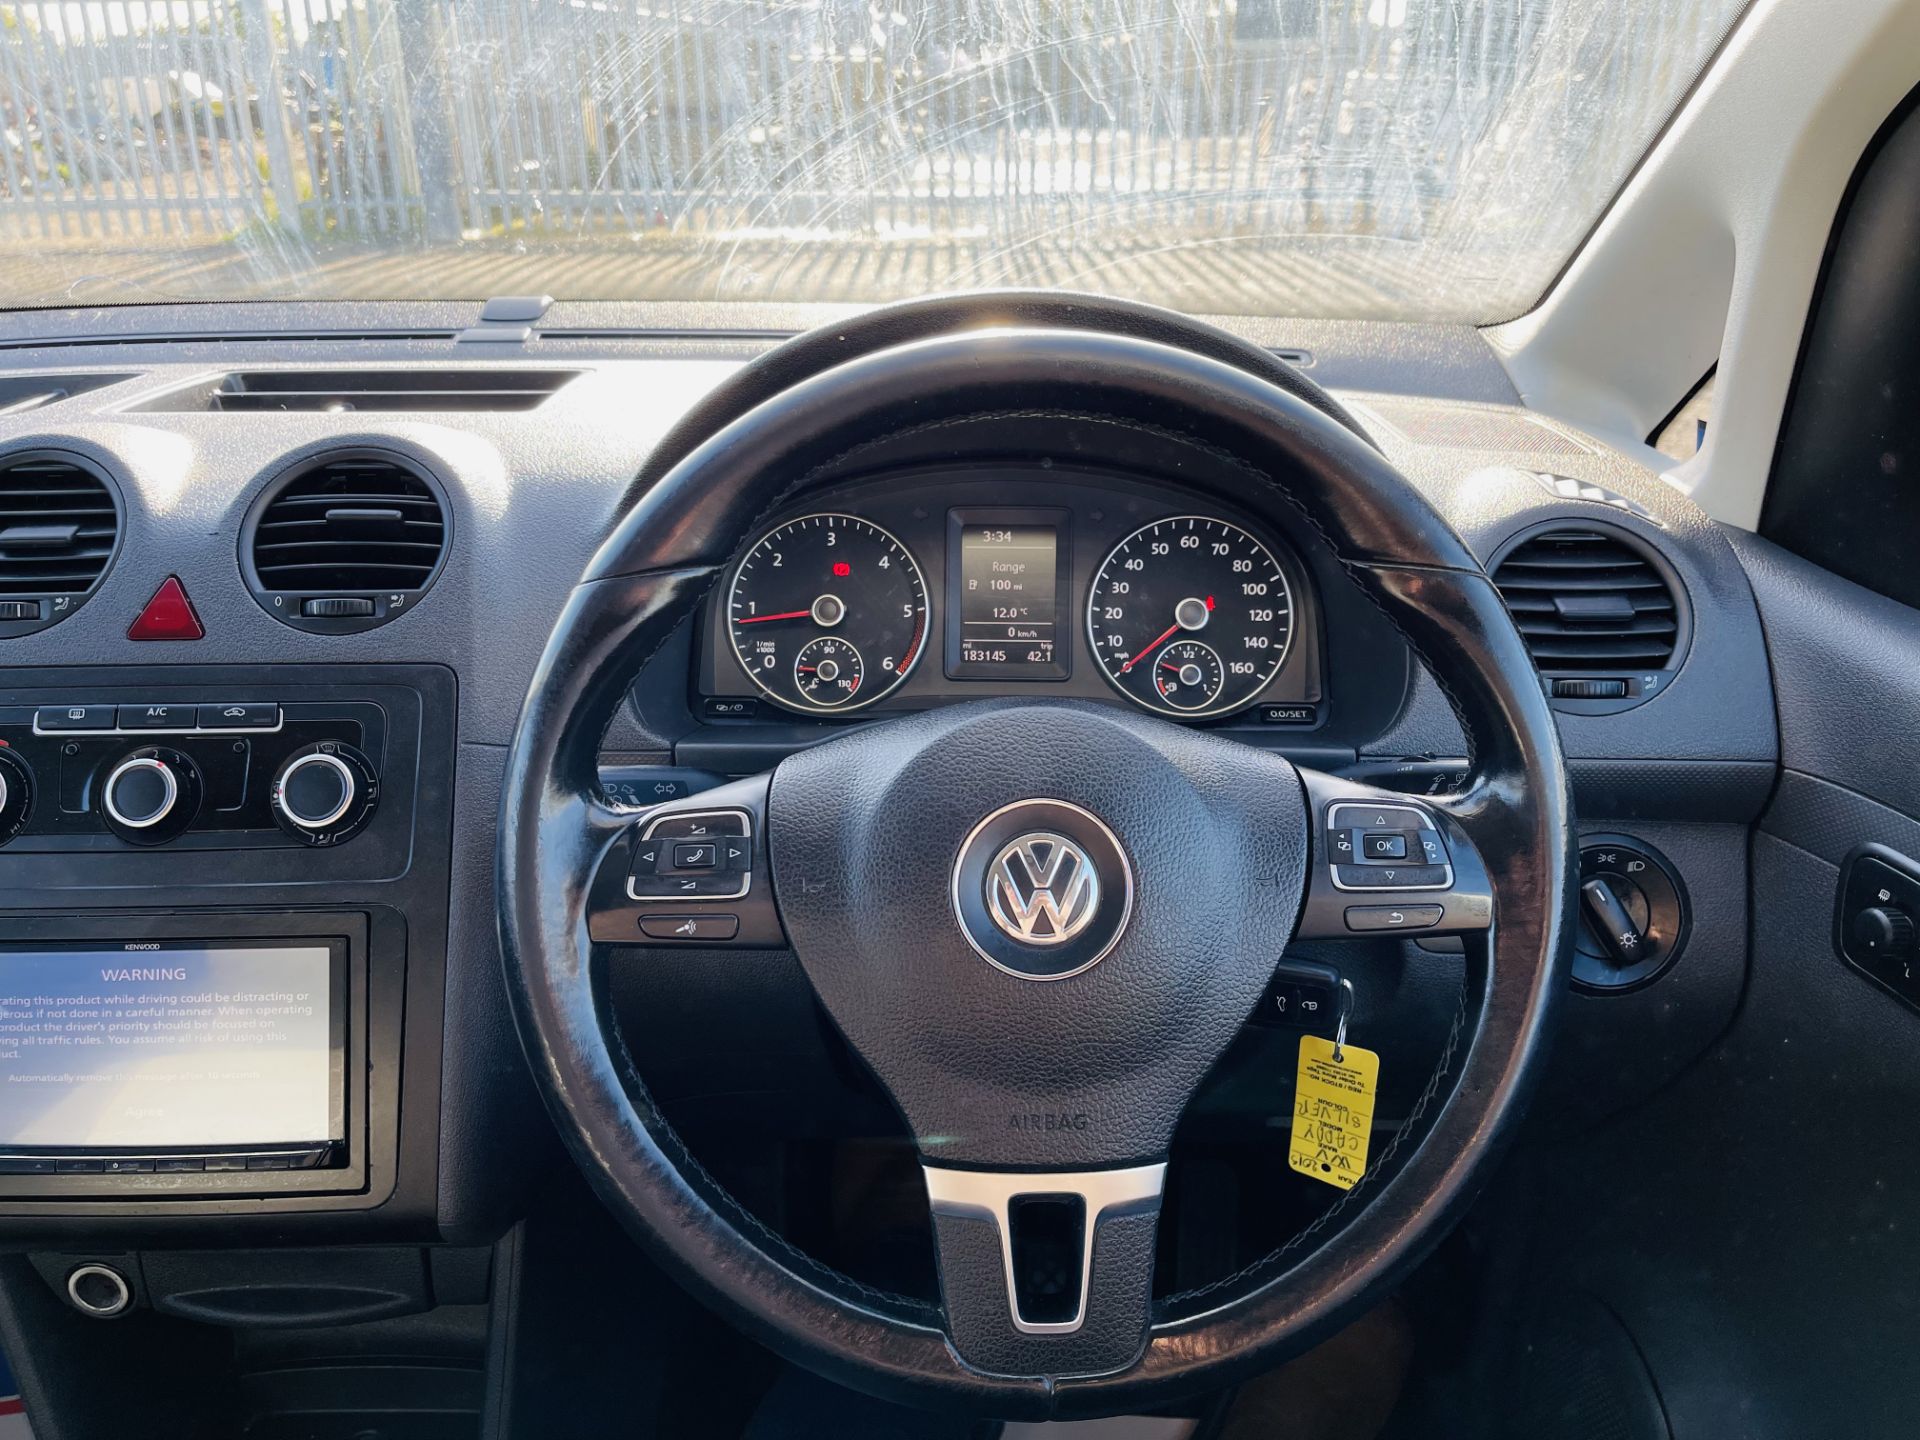 Volkswagen Caddy 1.6 TDI C20 Combi Maxi Dualiner 5 seats 2012 '62 Reg' Air Con - **Crew Van** - Image 28 of 29